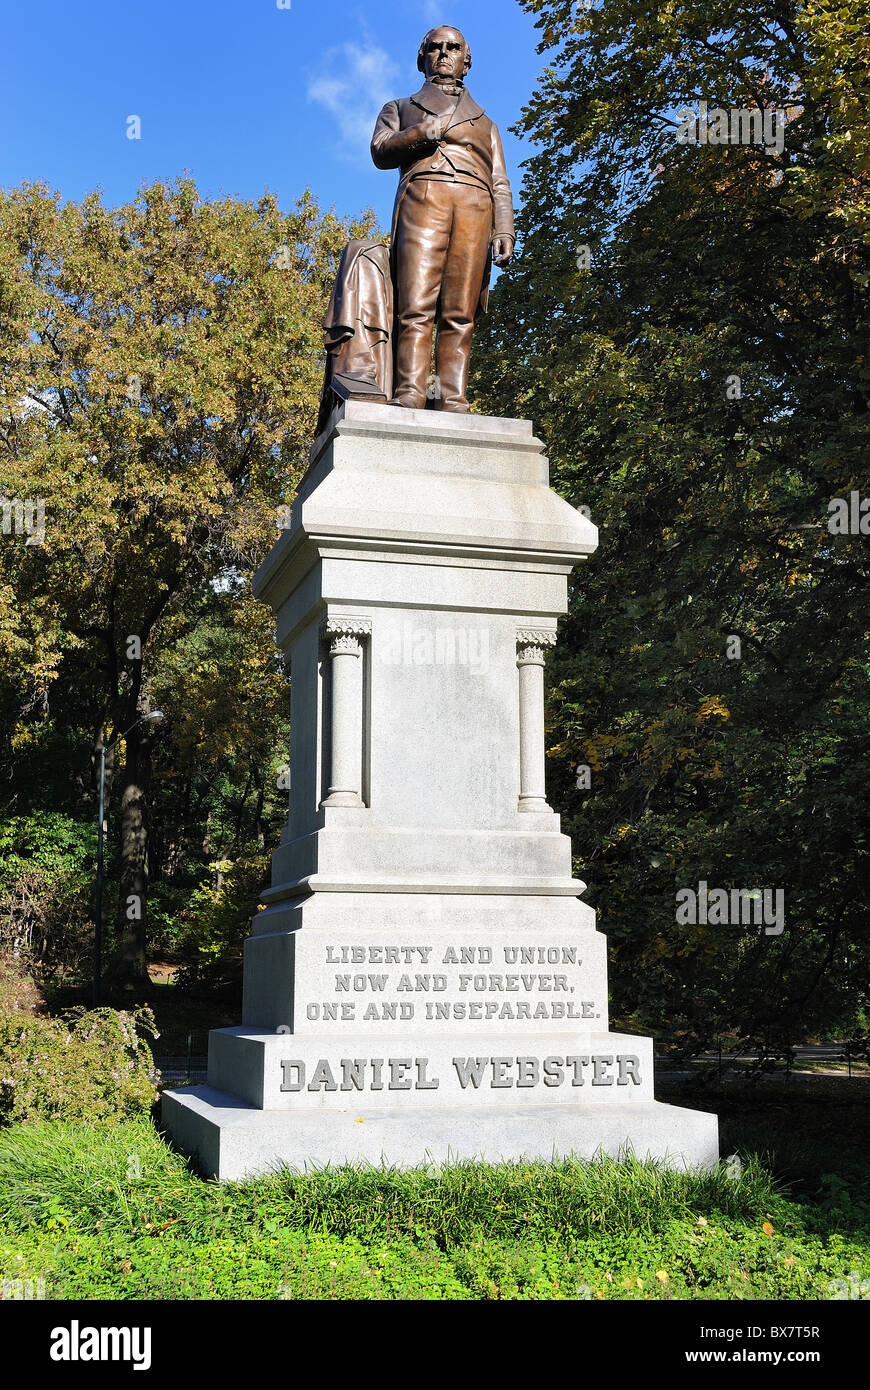 Monument à Daniel Webster dans Central Park à New York, un important homme d'État américain au cours de la période d'avant. Banque D'Images